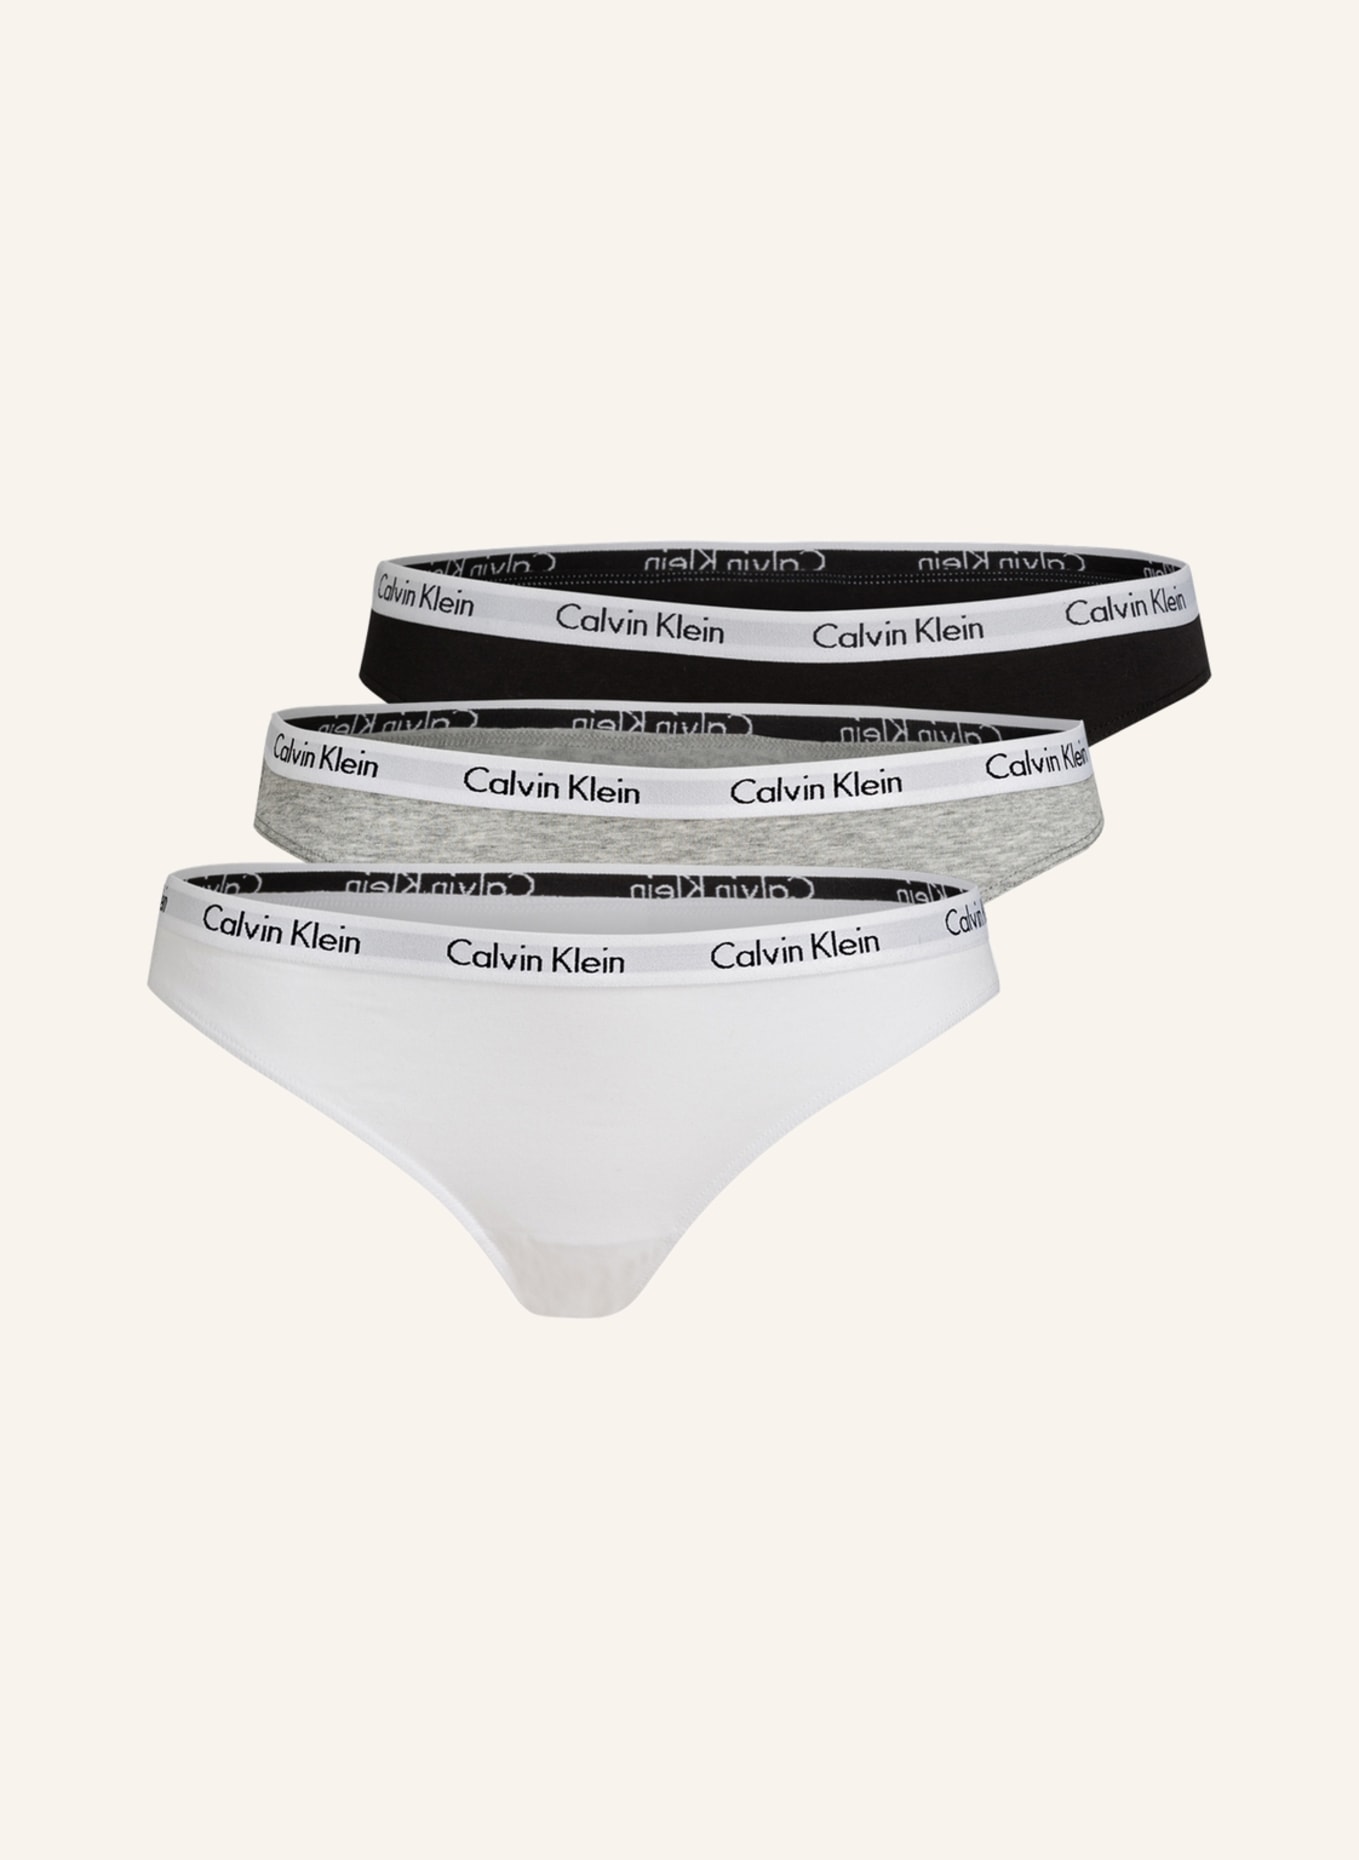 Reiss Black Calvin Klein Underwear Triangle Bra